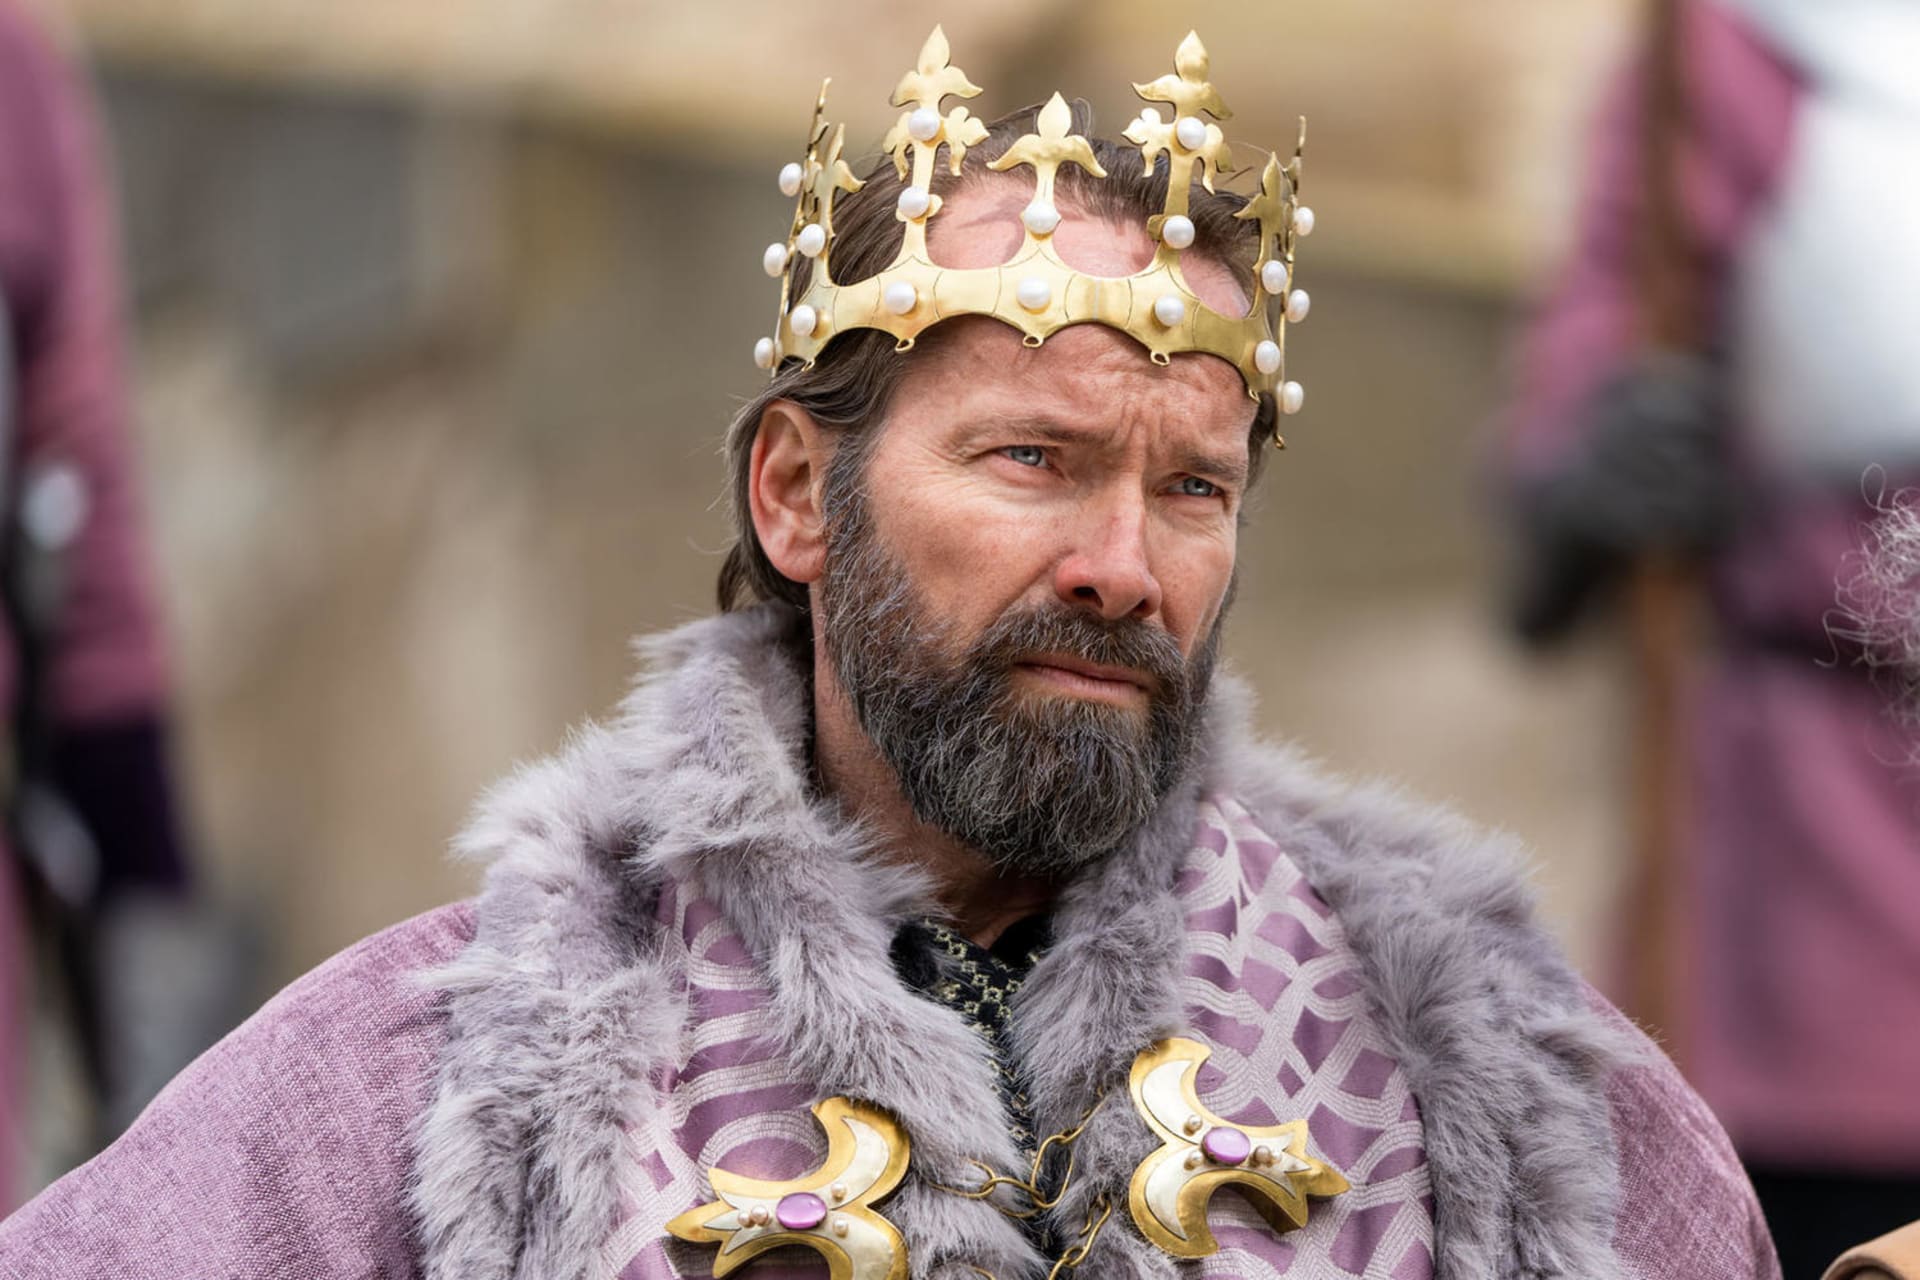 Jan Révai v roli krále v pohádce Princezna zakletá v čase 2